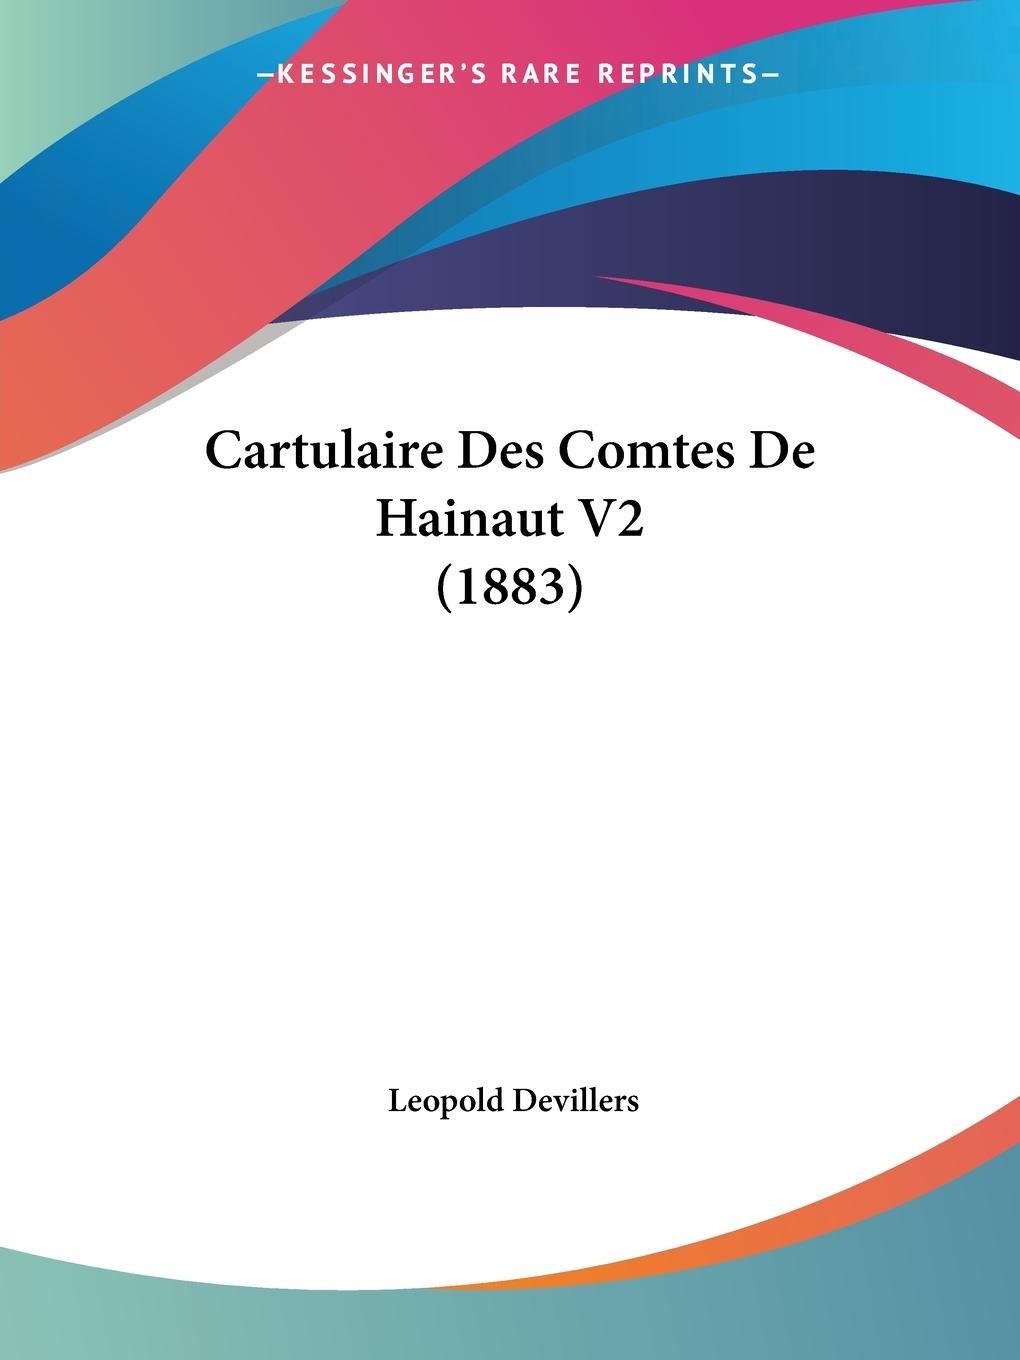 Cartulaire Des Comtes De Hainaut V2 (1883) - Devillers, Leopold